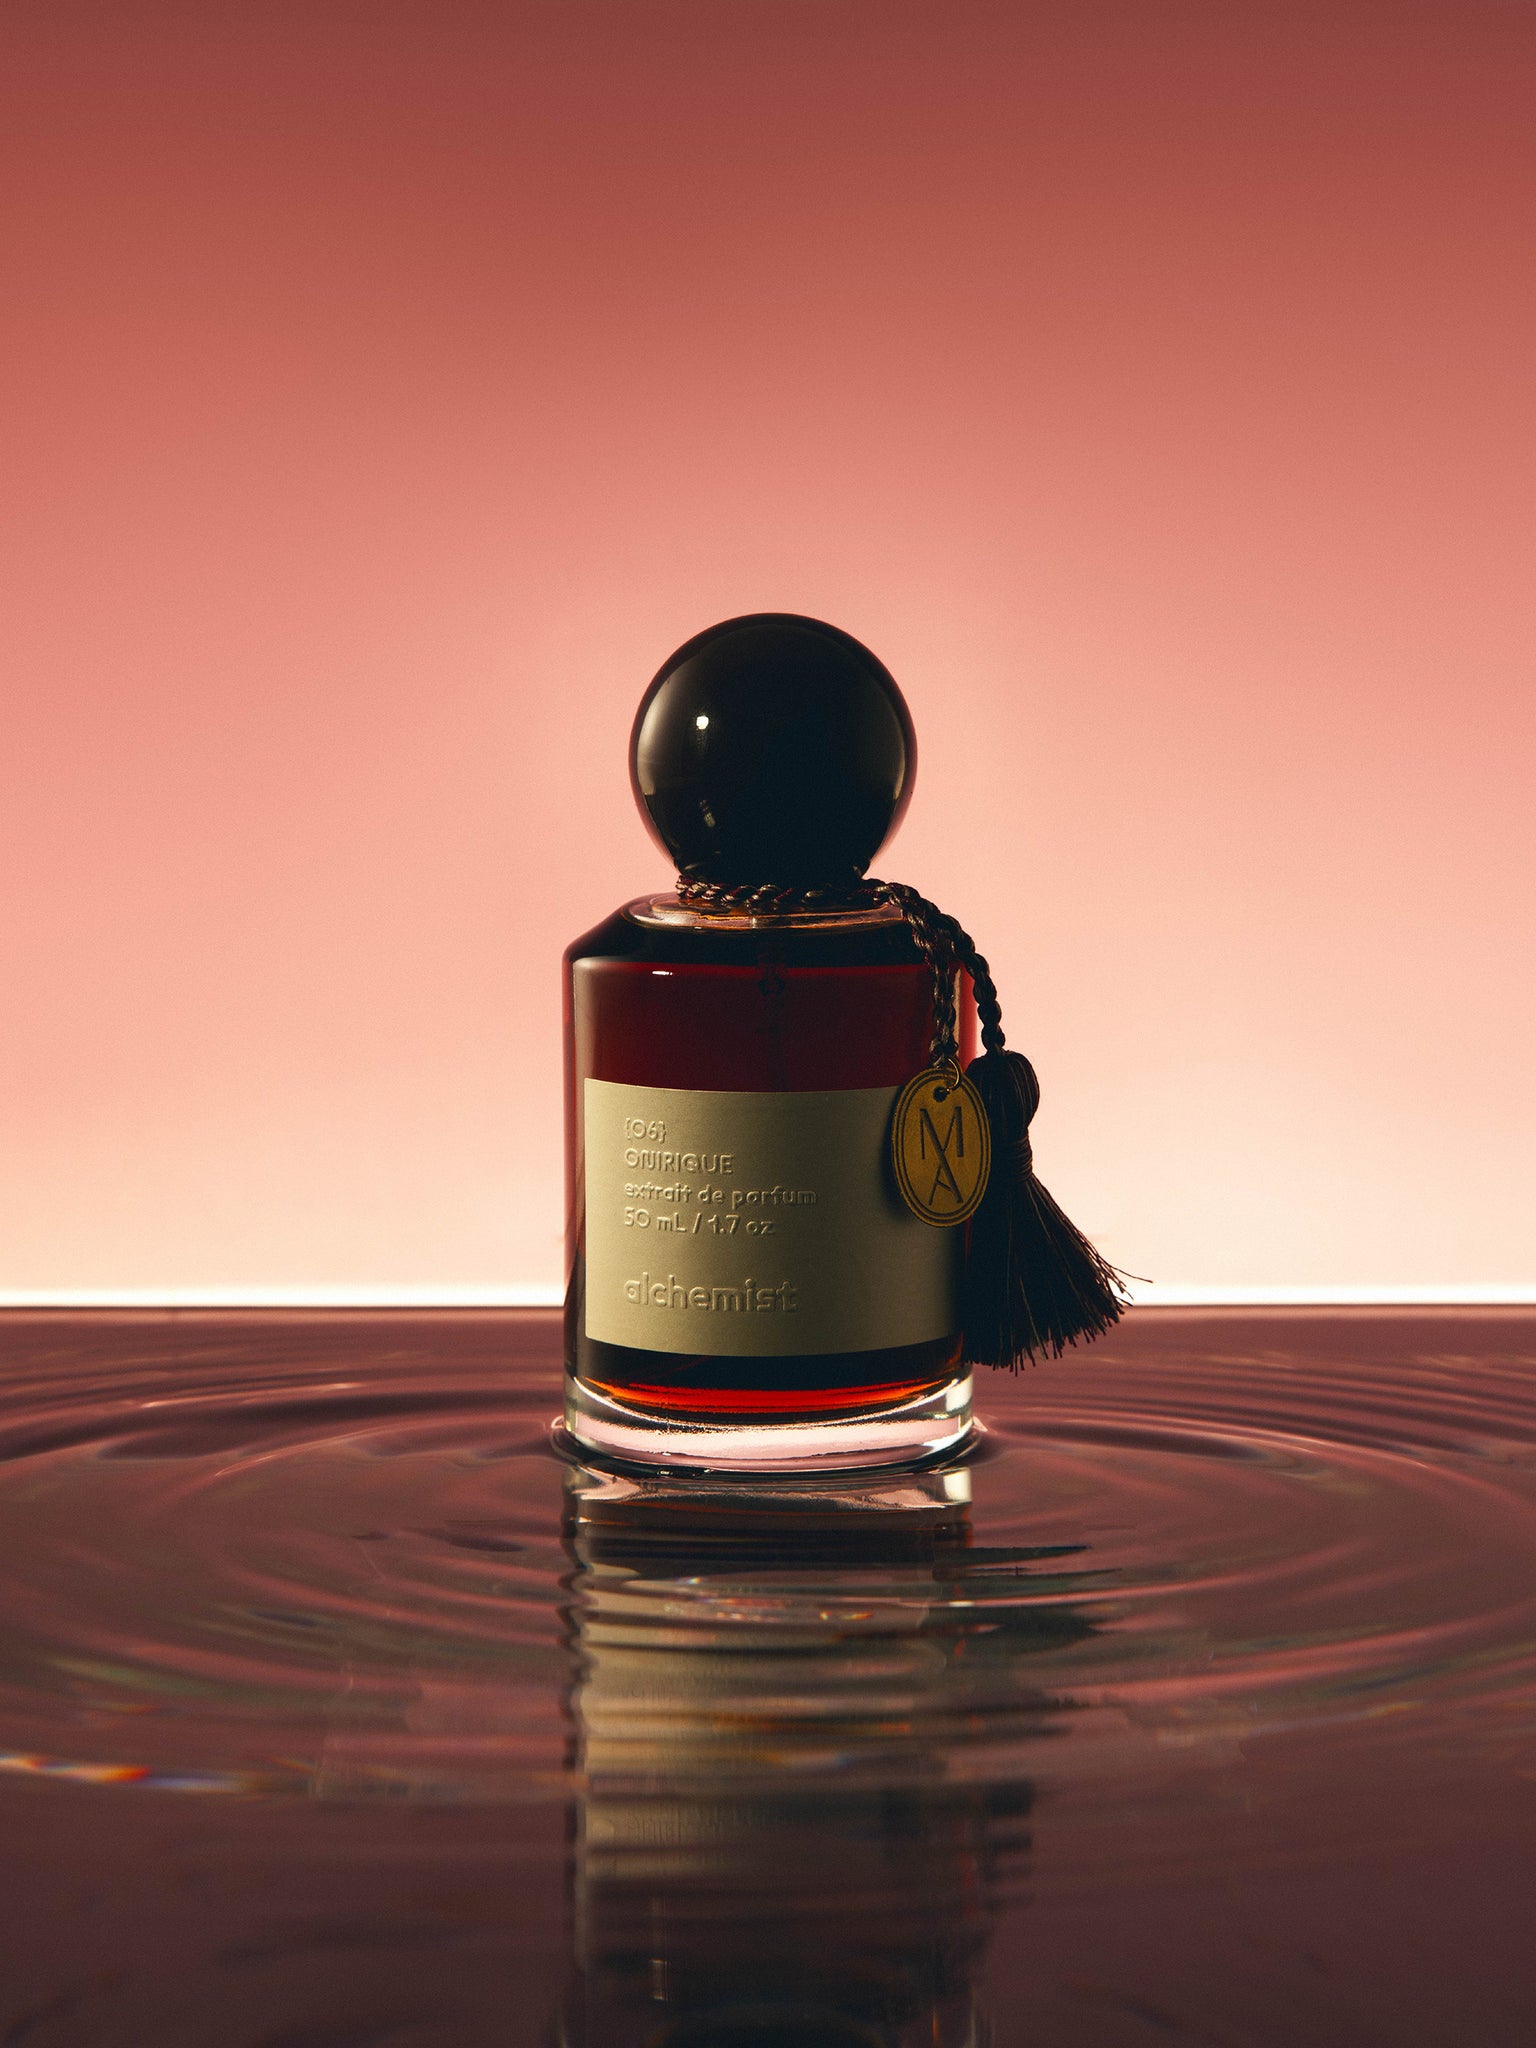 Onirique | Extrait de Parfum